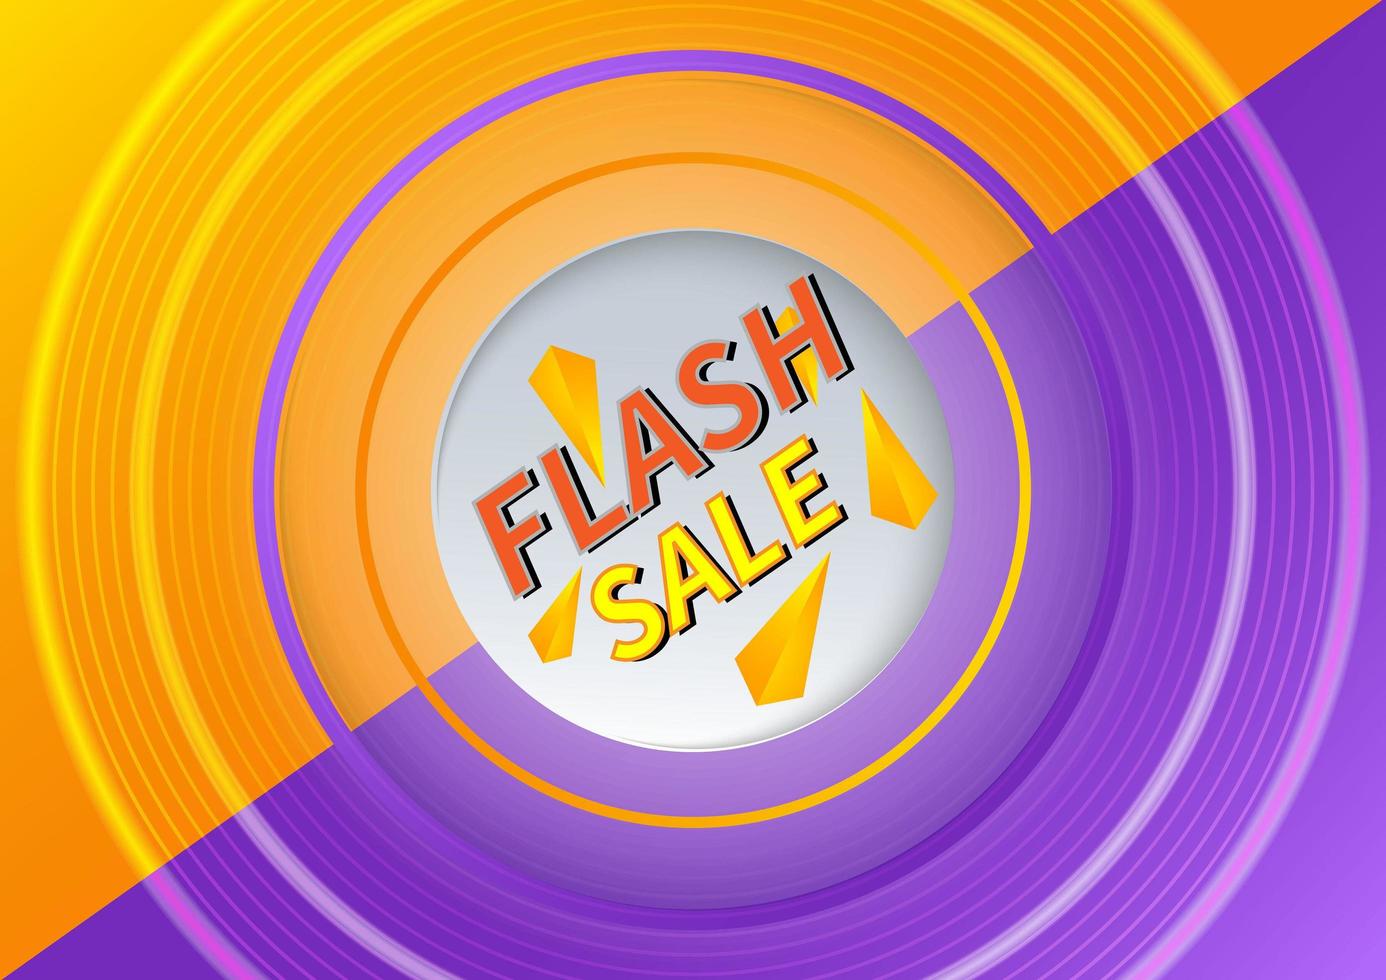 modèle de conception de bannière de vente flash offre des achats sur fond orange et violet. vecteur